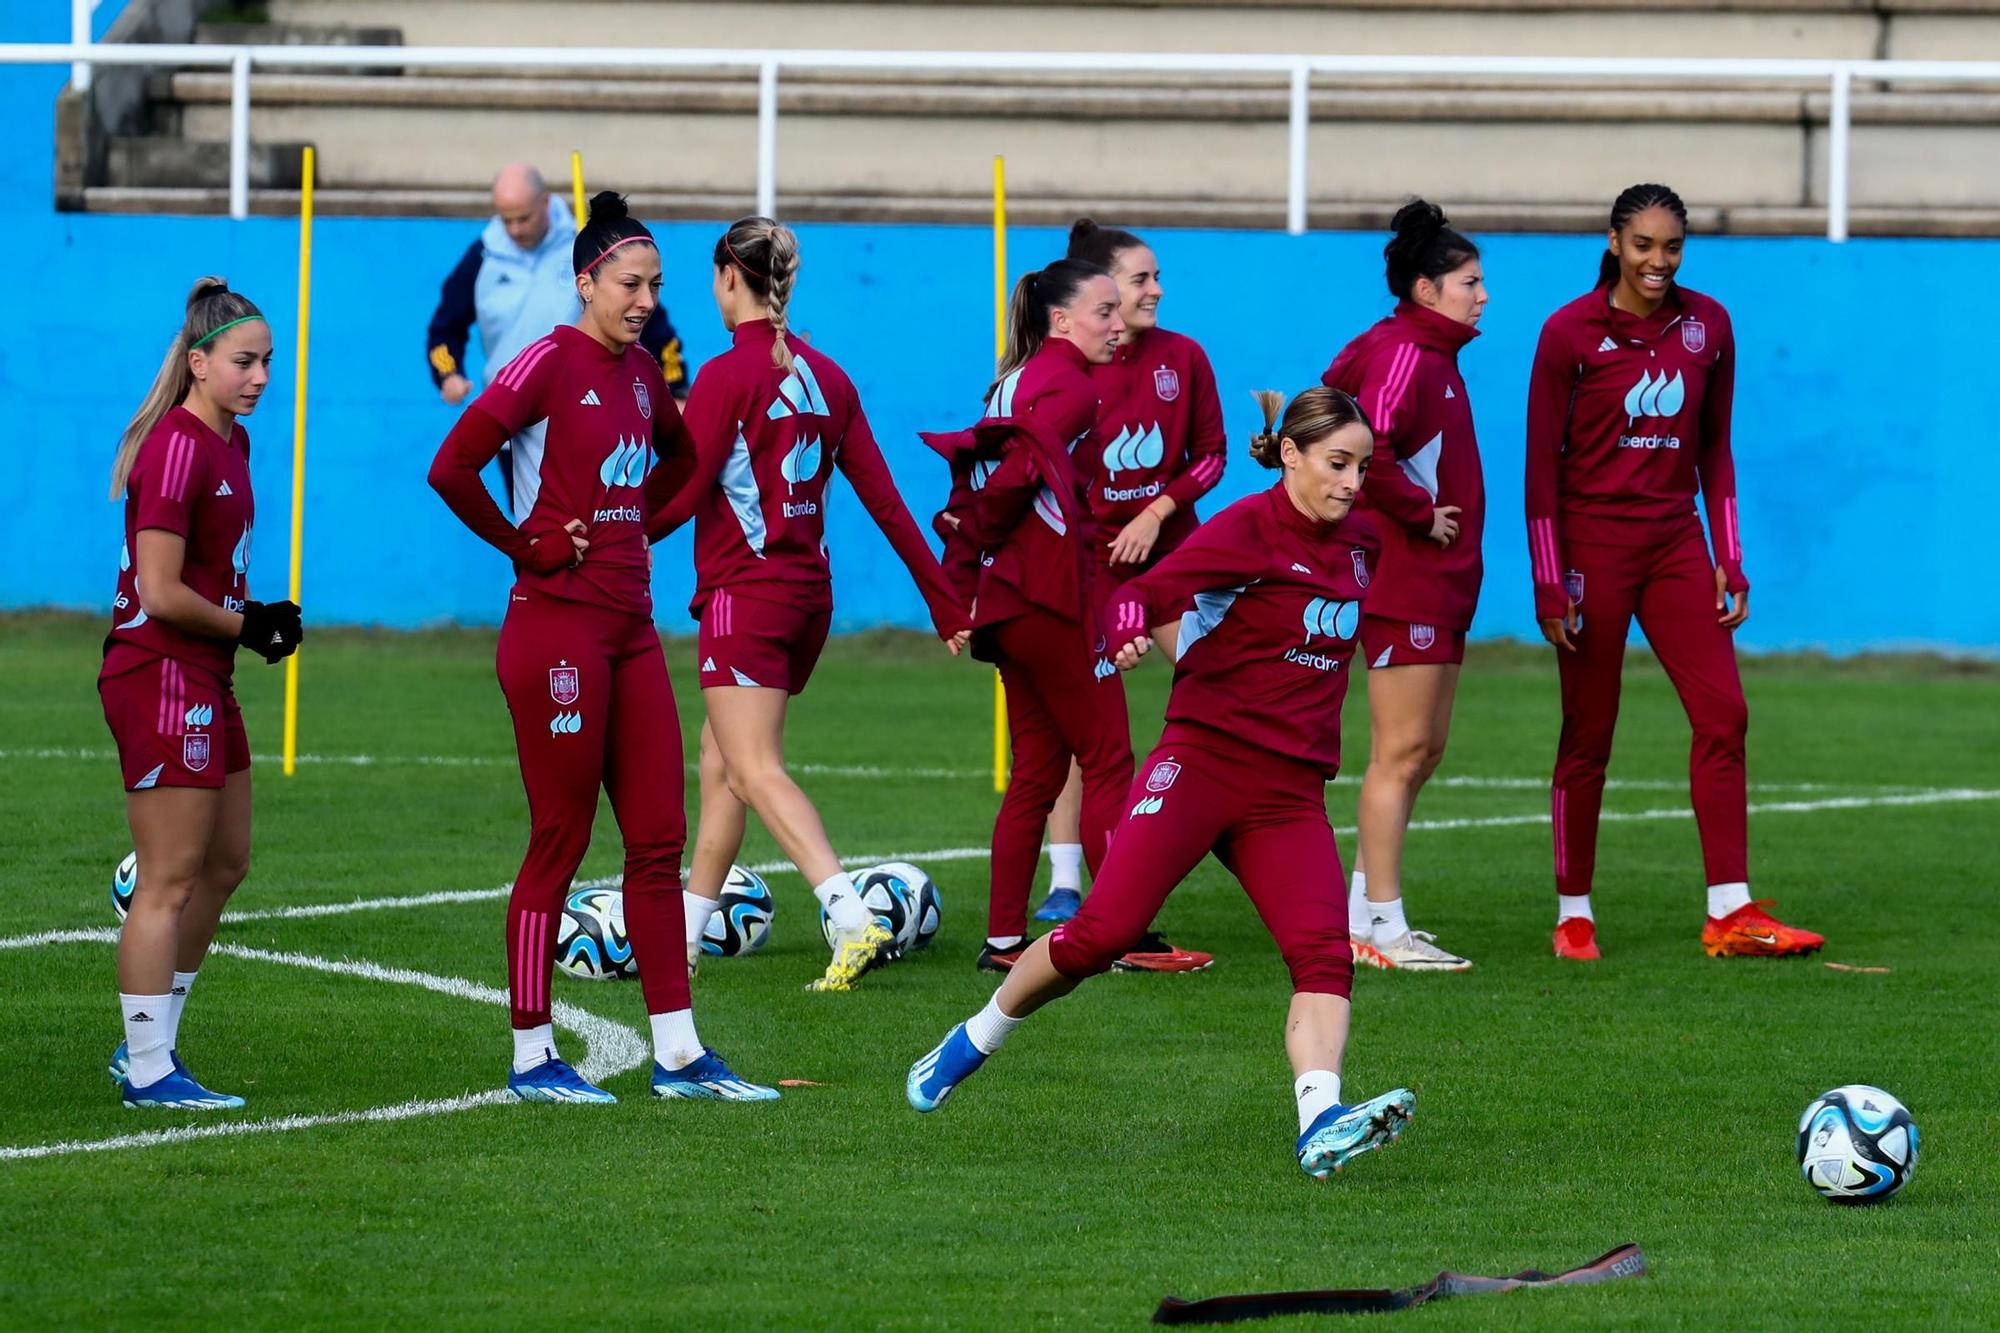 La selección femenina de fútbol entrenándose en el estadio de Burgans